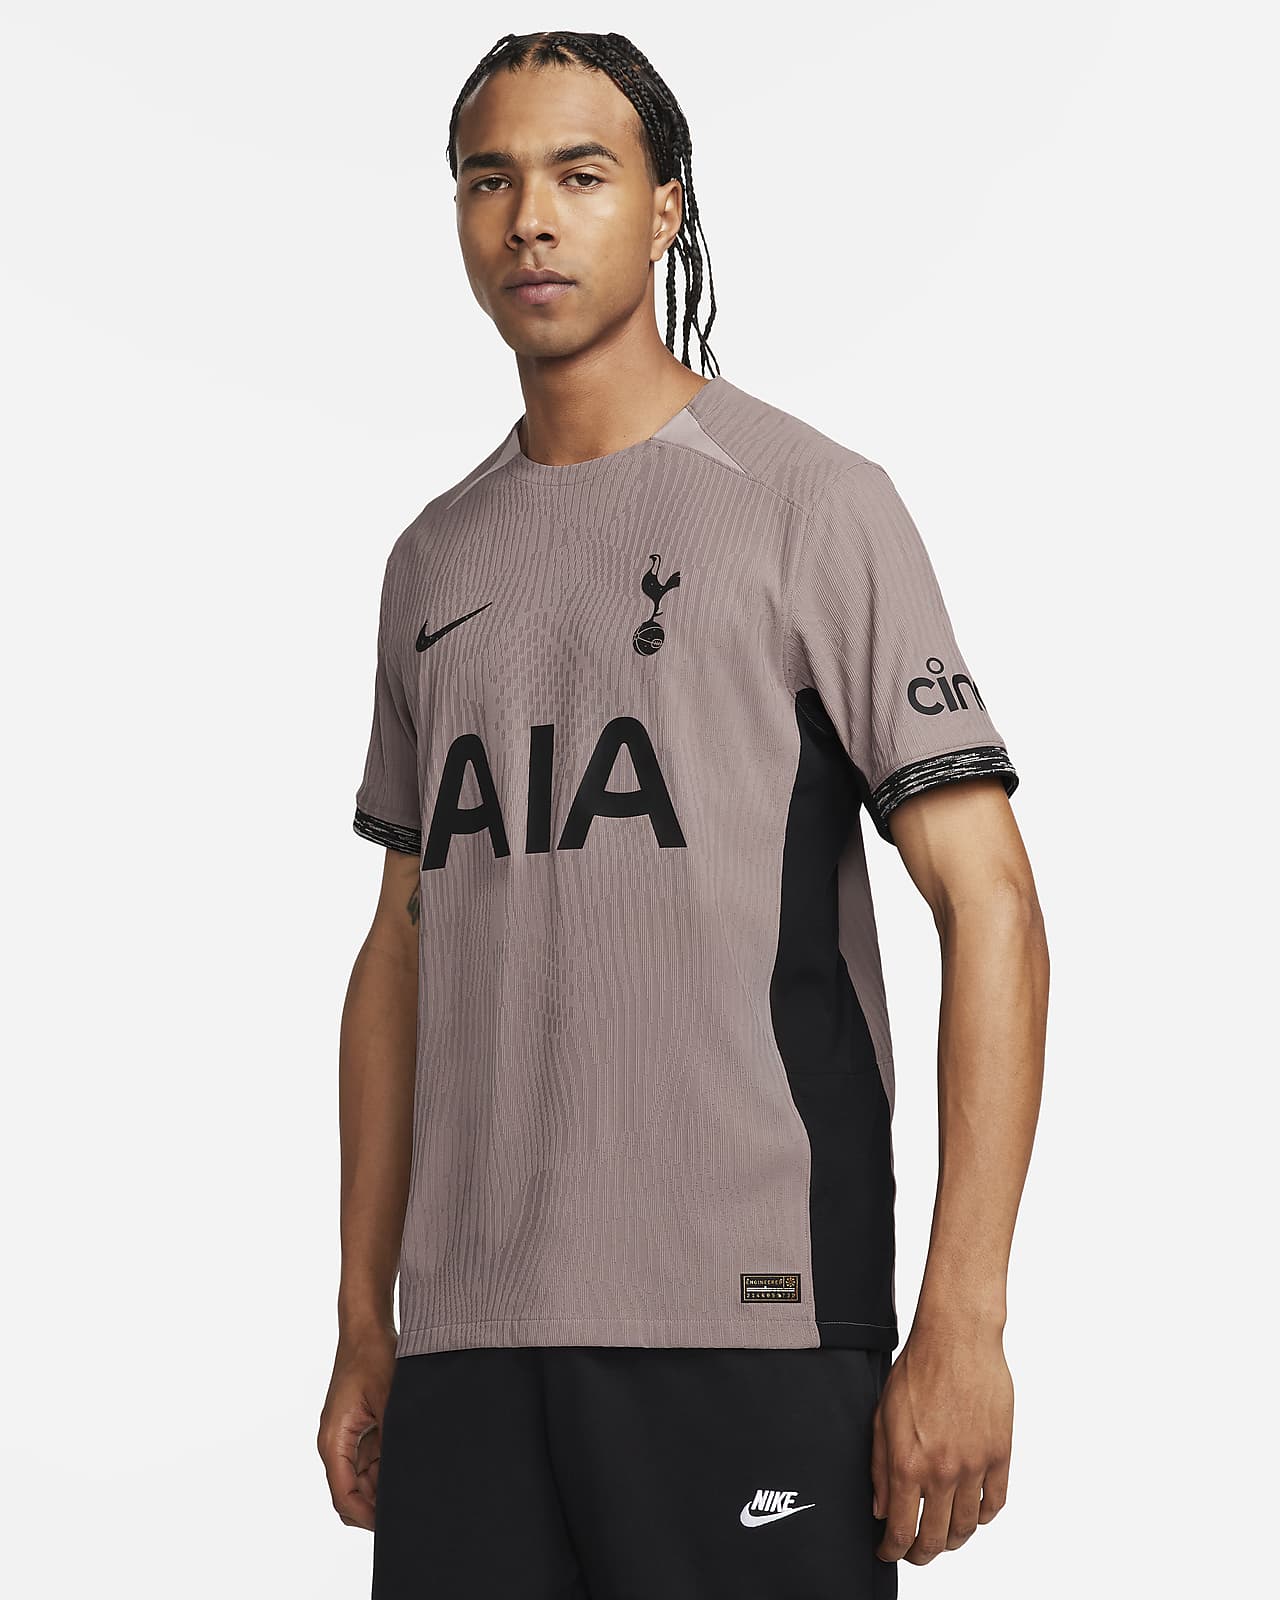 Tottenham Hotspur 2014 2014 Home Spurs shirt jersey football maillot